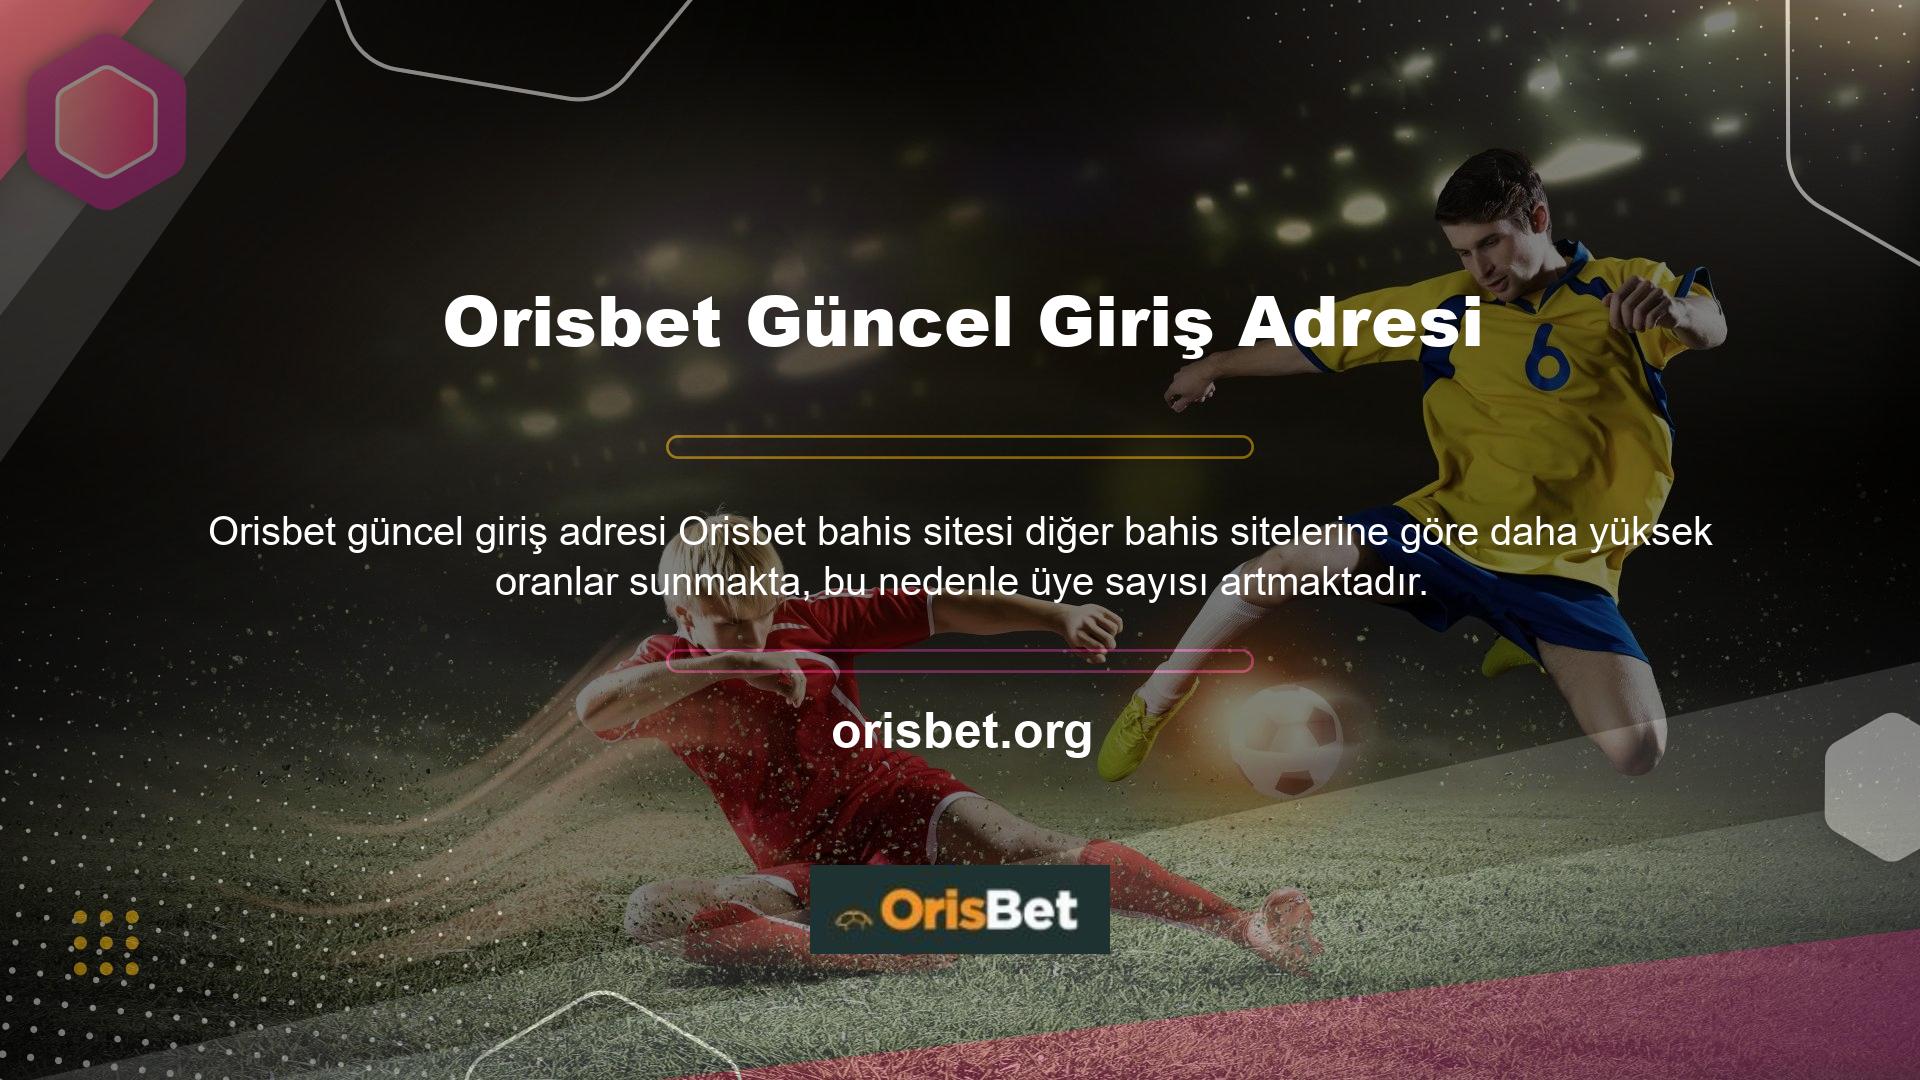 Orisbet casino sitesi, üye sayısı her geçen gün arttığı için Türkiye'deki yasa dışı casino sitelerinden biridir